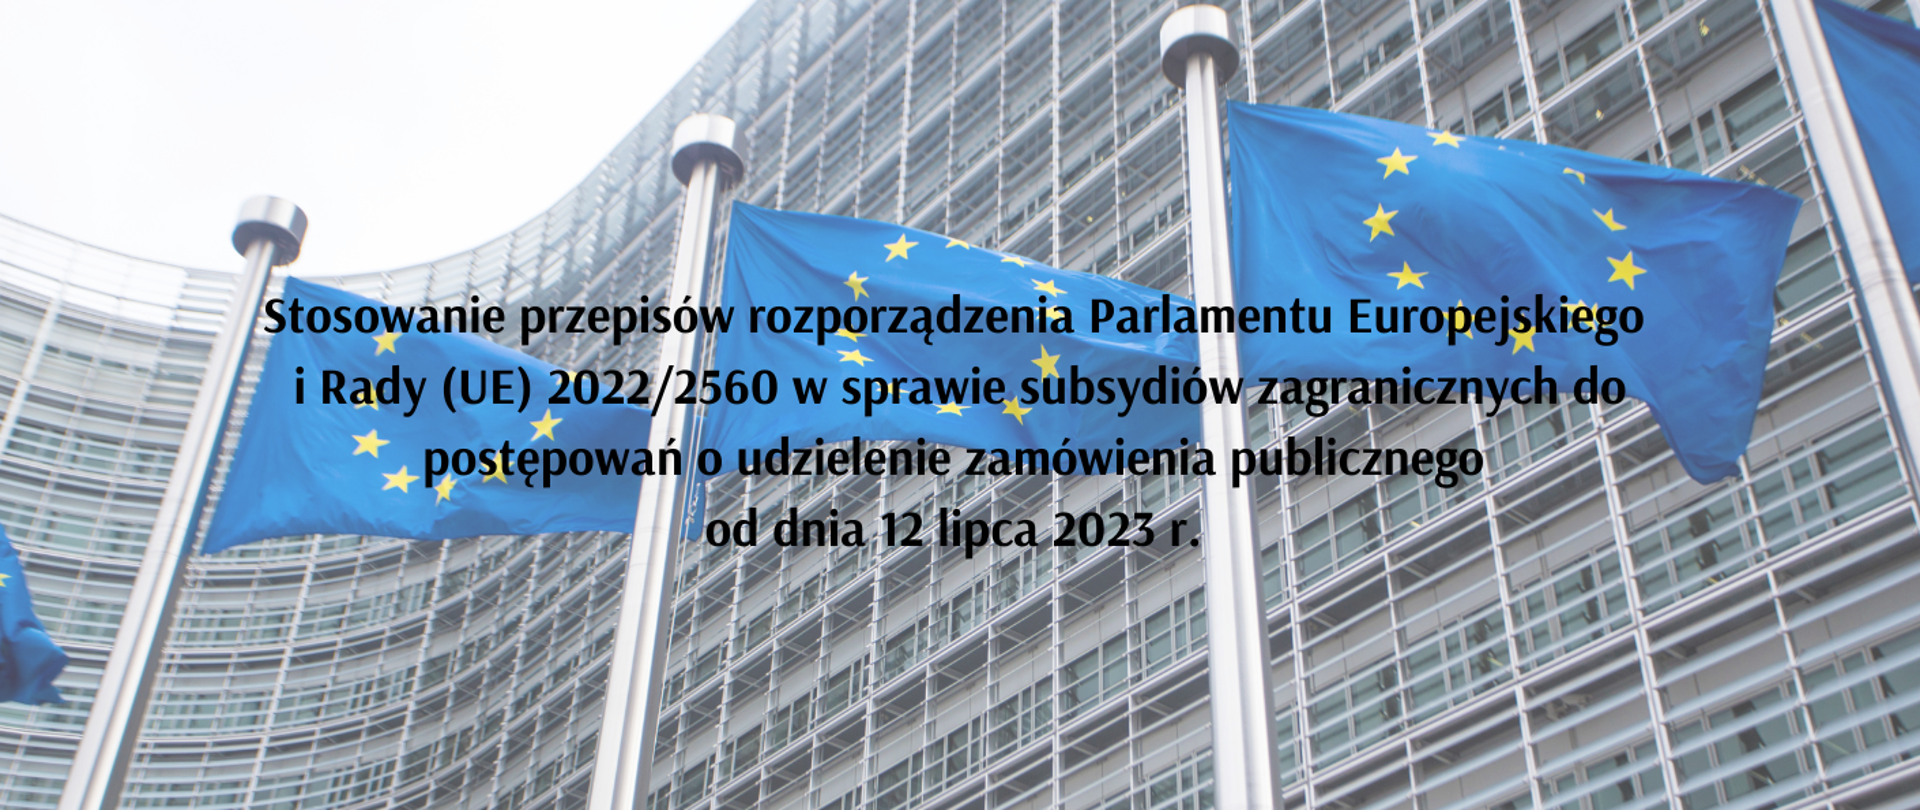 Stosowanie przepisów rozporządzenia Parlamentu Europejskiego i Rady (UE) 2022/2560 w sprawie subsydiów zagranicznych do postępowań o udzielenie zamówienia publicznego od dnia 12 lipca 2023 r. 